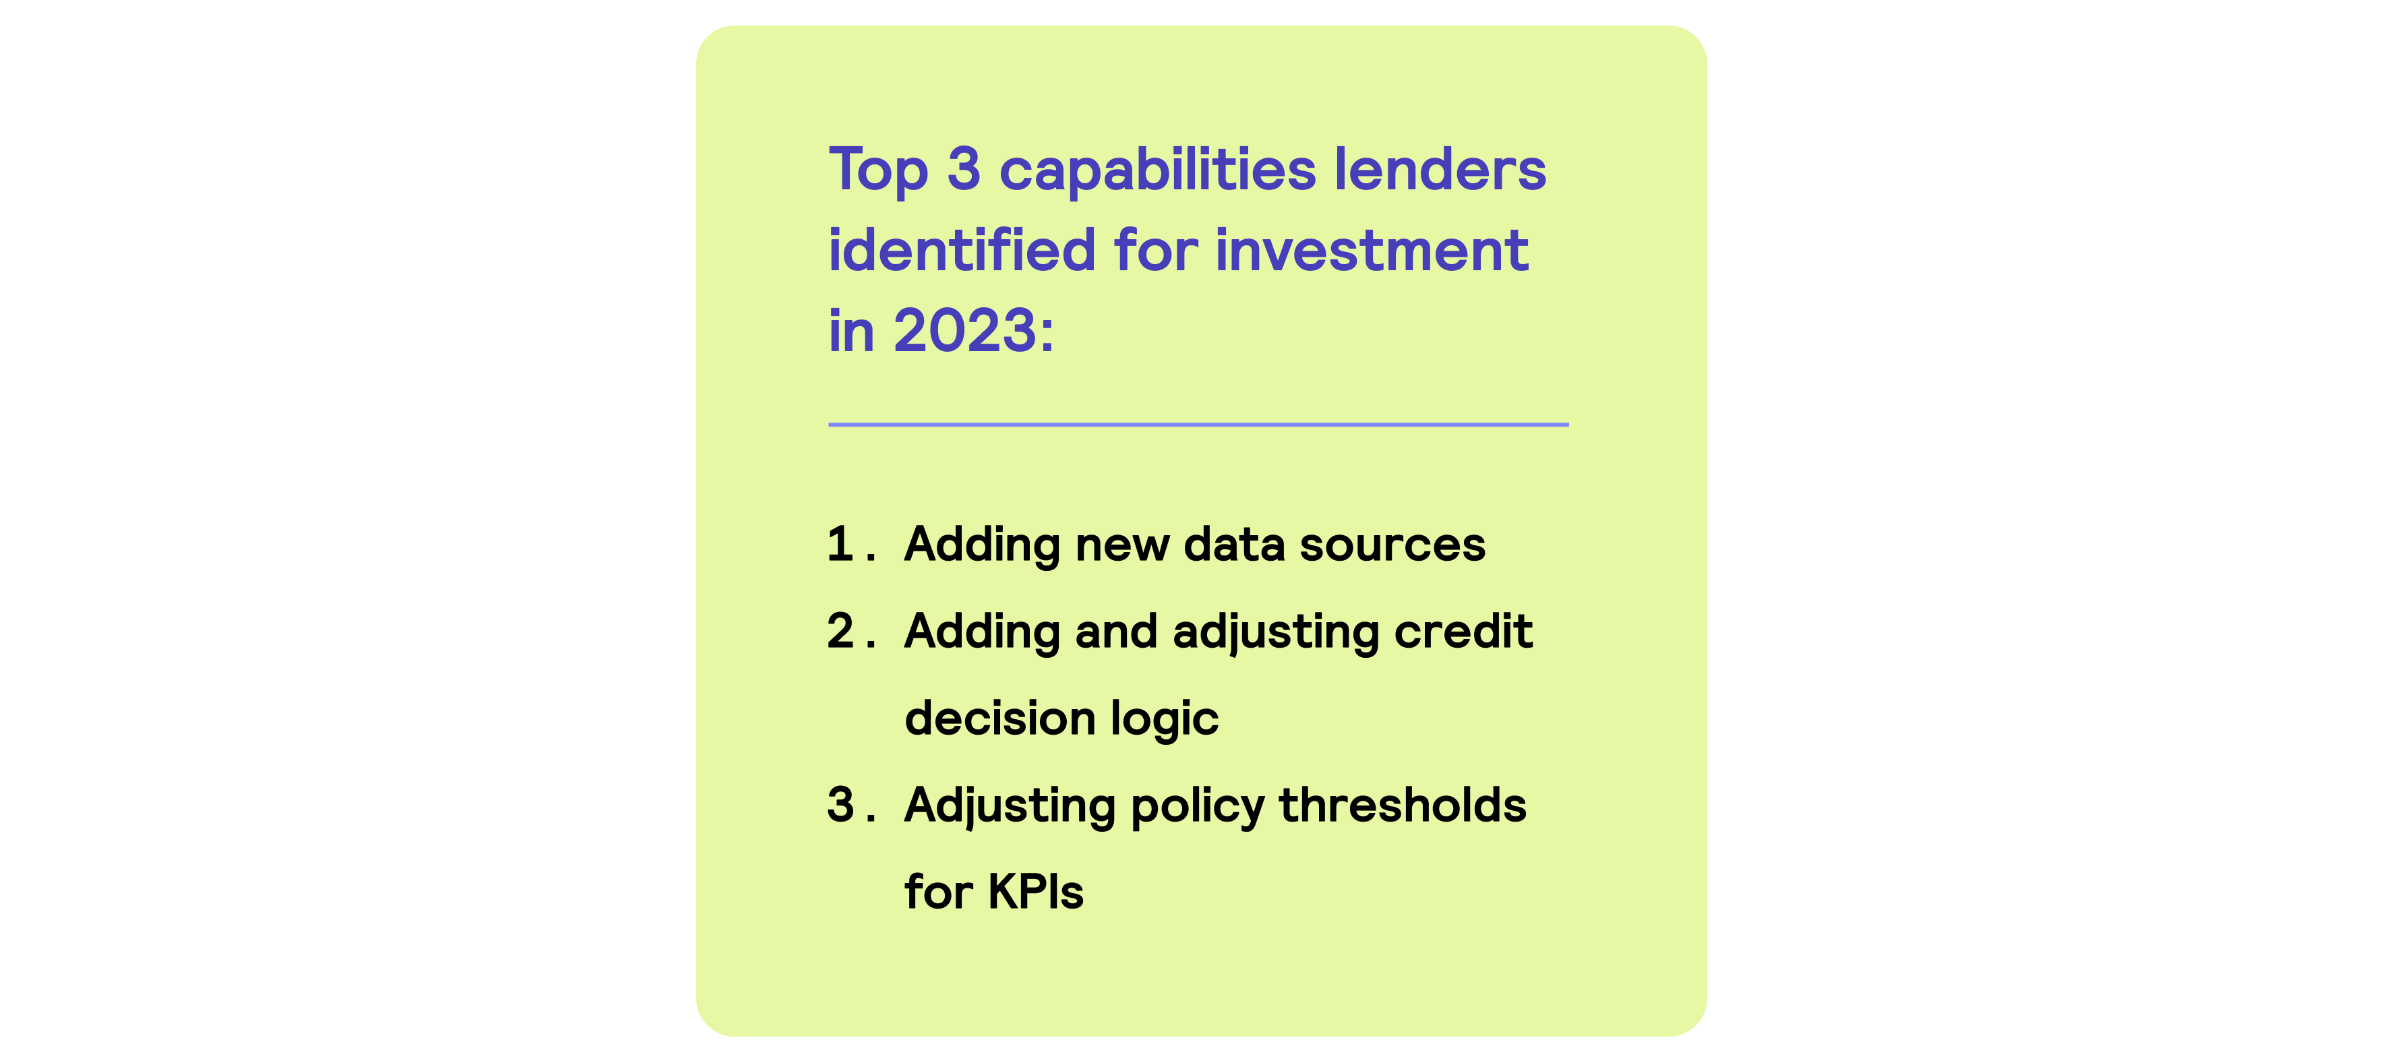 Top investment priorities of lenders in 2023